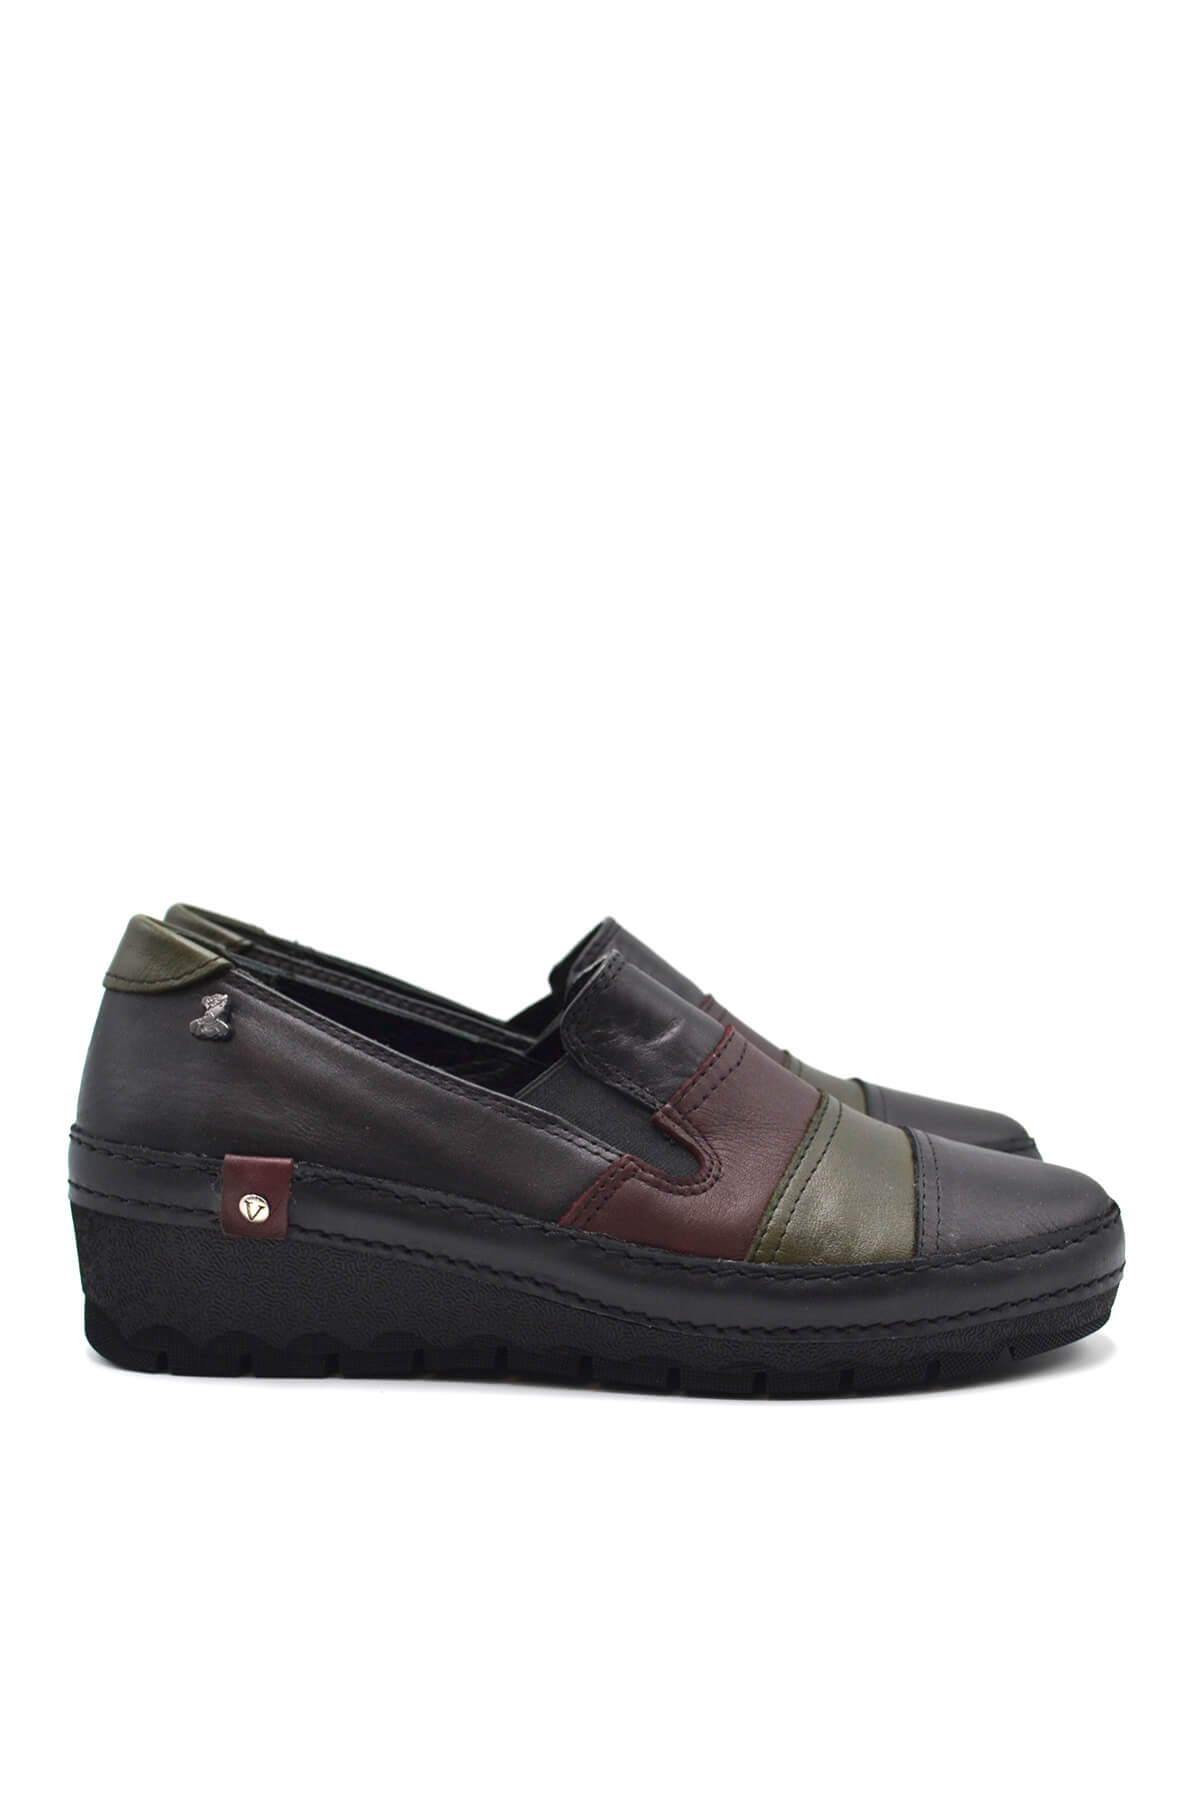 Kadın Comfort Deri Ayakkabı Siyah 2213507K - Thumbnail